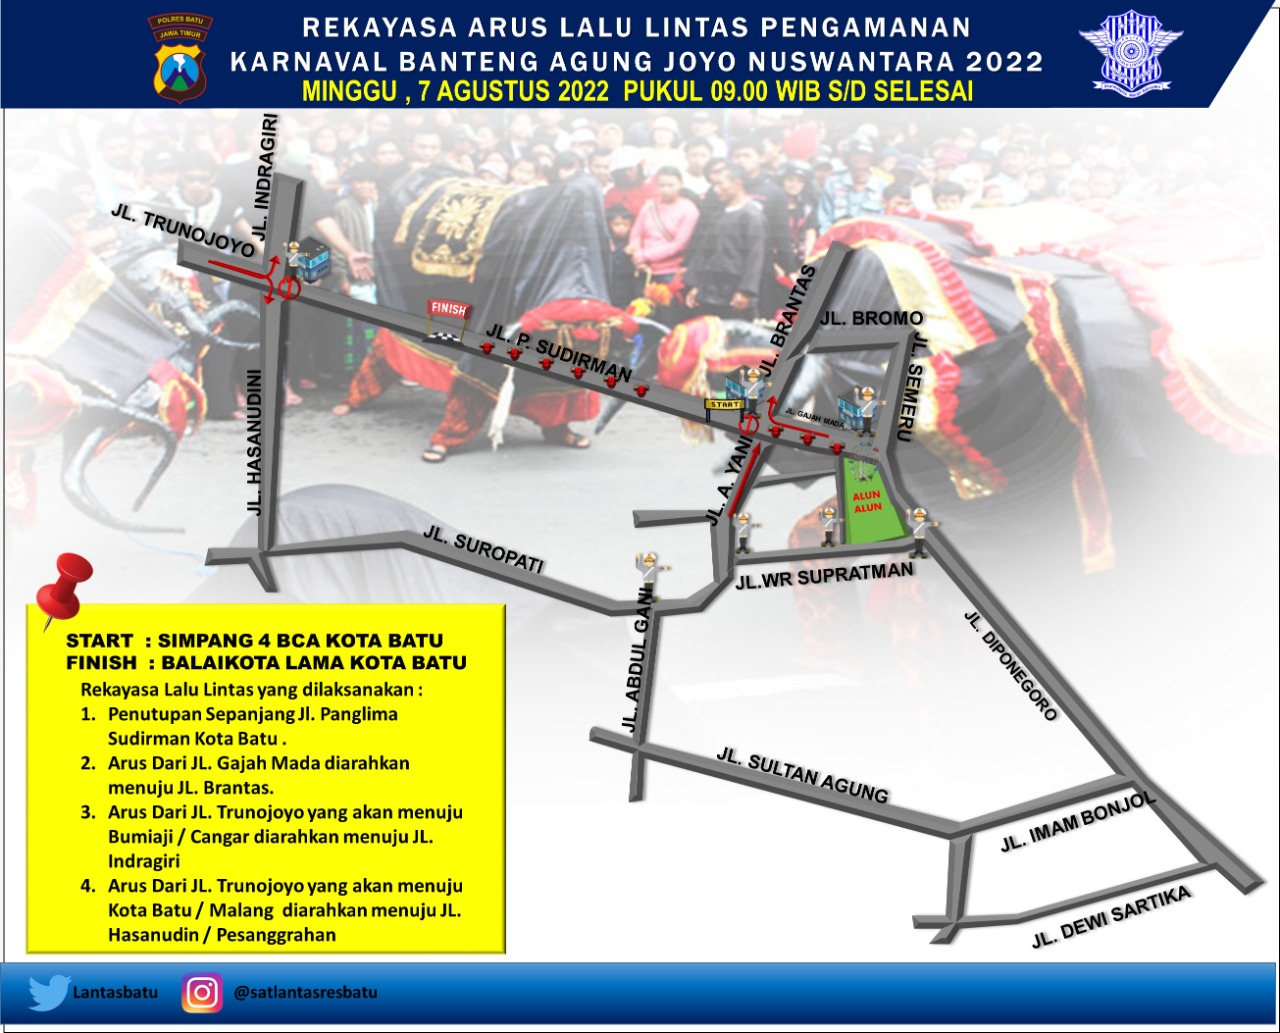 Skema rekayasa lalu lintas Polres Batu dalam rangka Kirab Banteng Agung Joyo Nuswantara pada Minggu, 7 Agustus 2022.